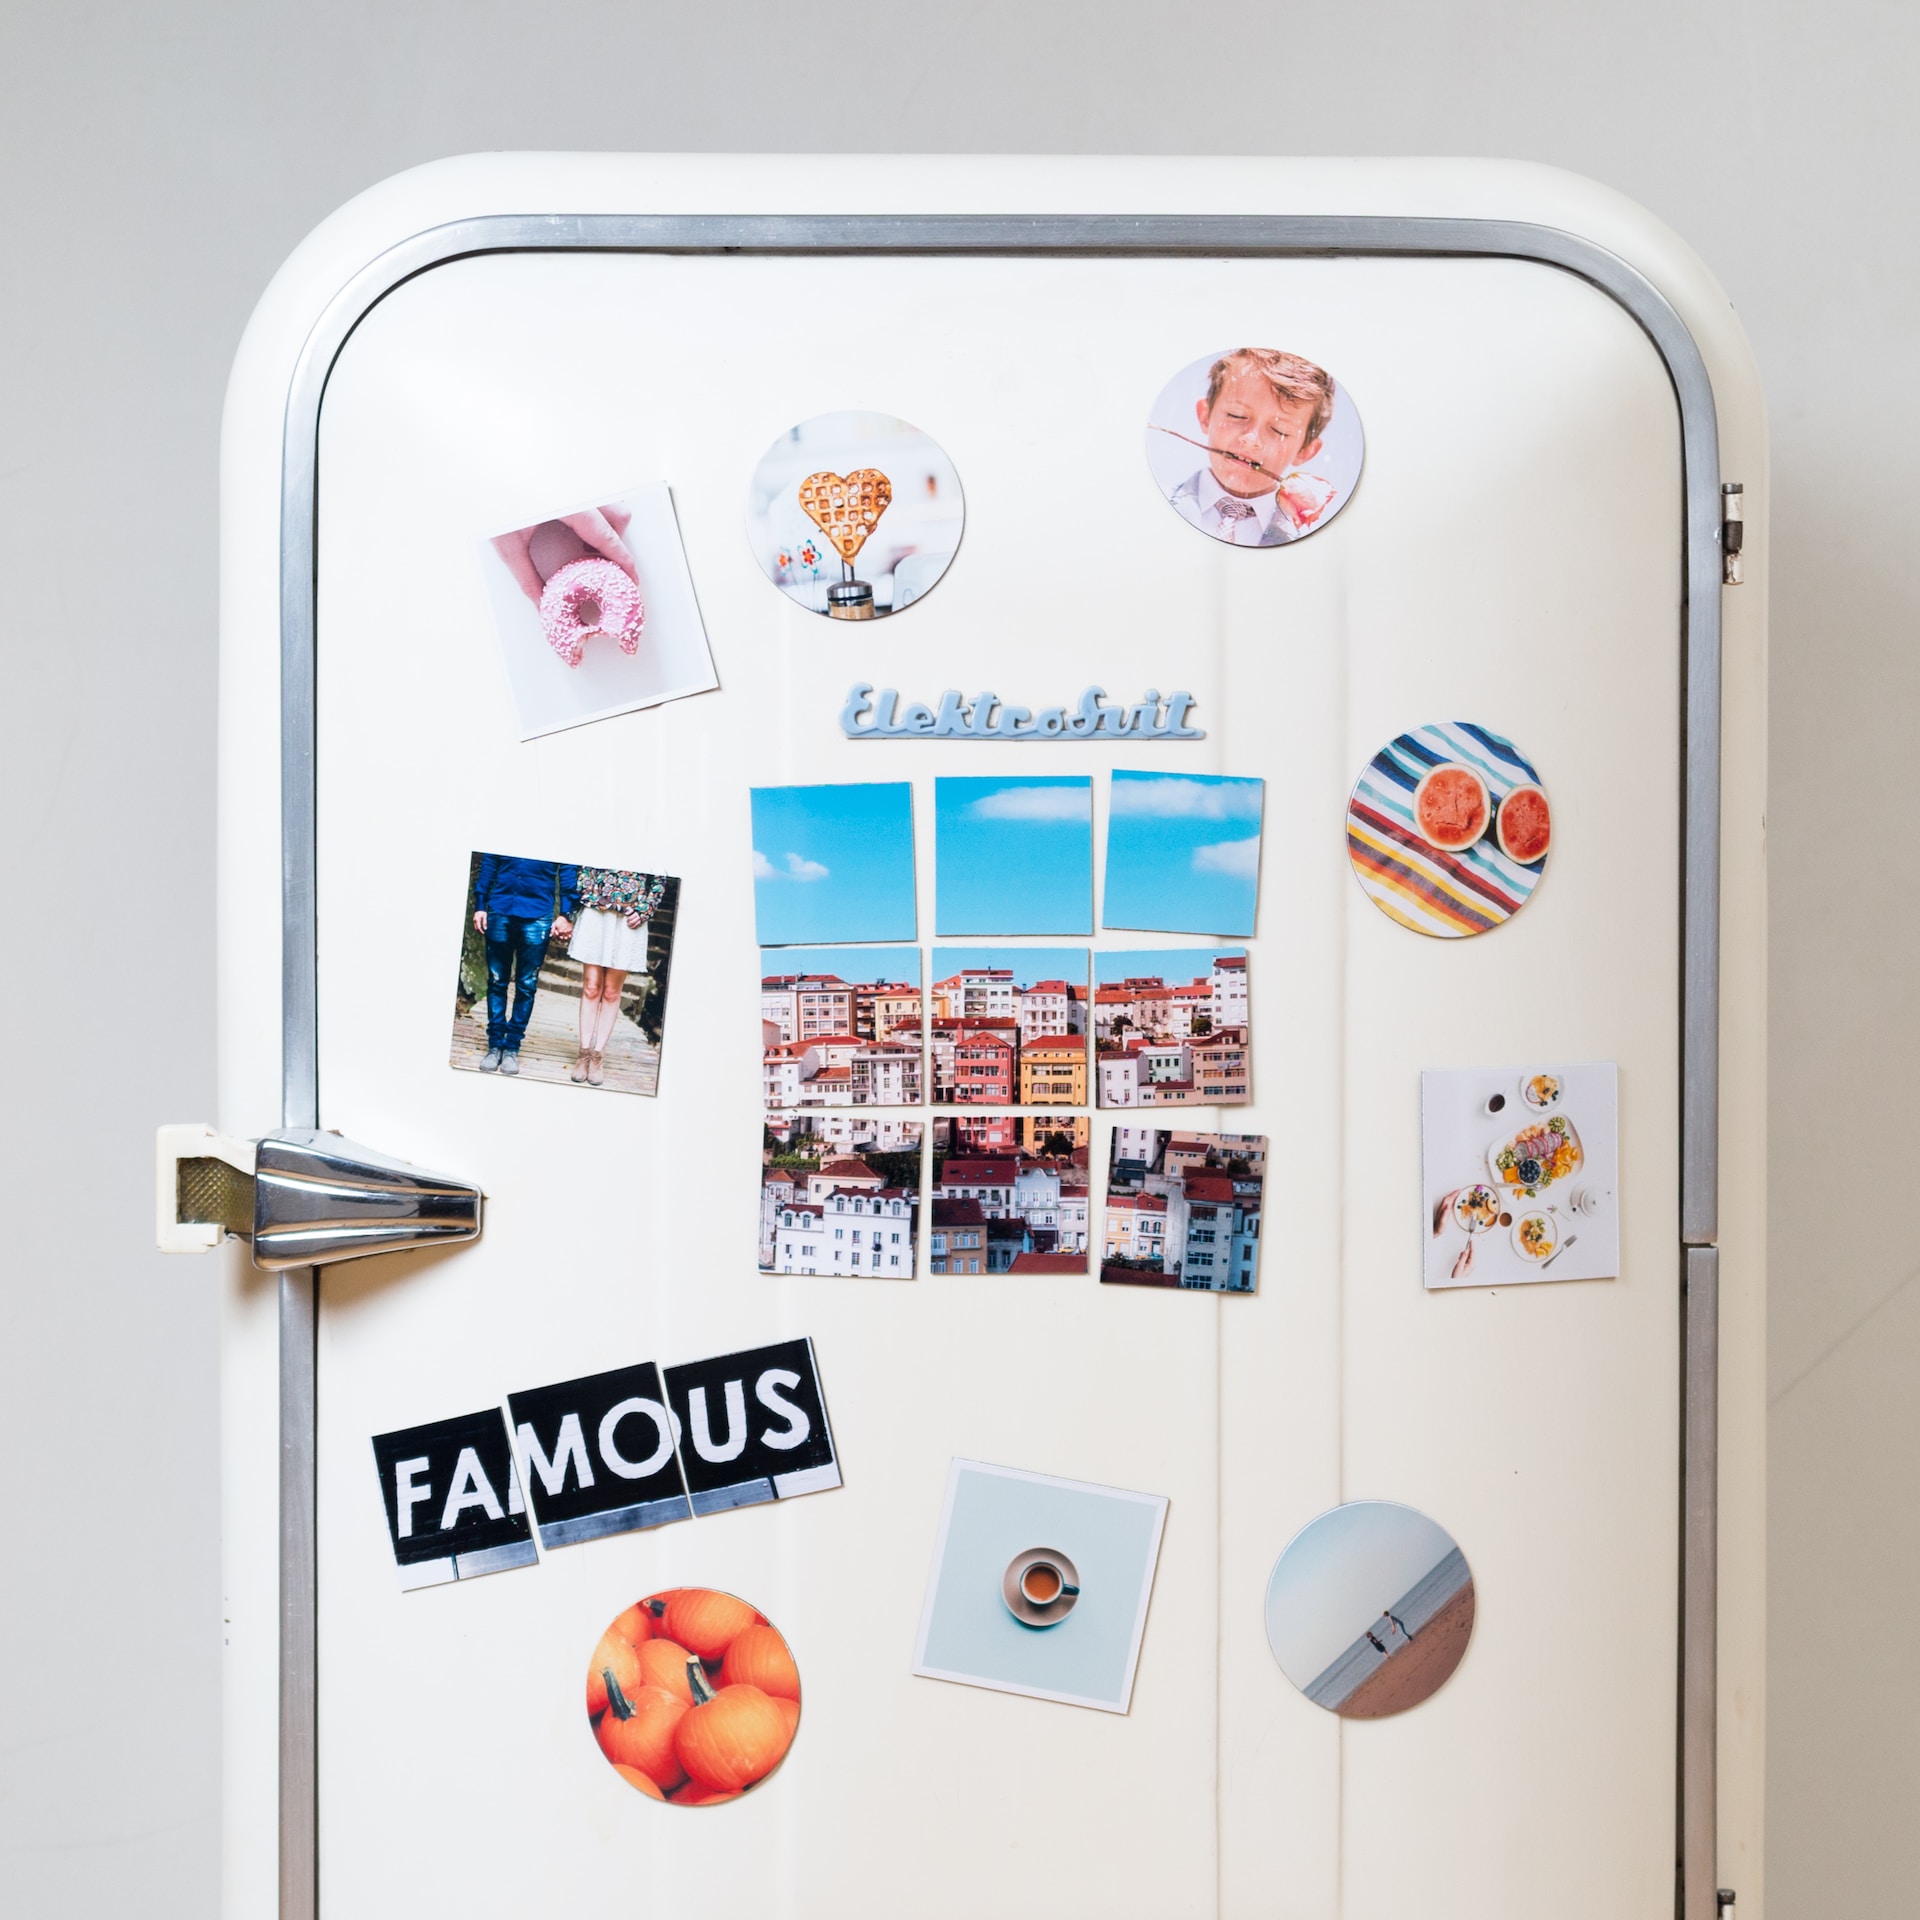 Design och motiv på kylskåpsmagneter – en guide